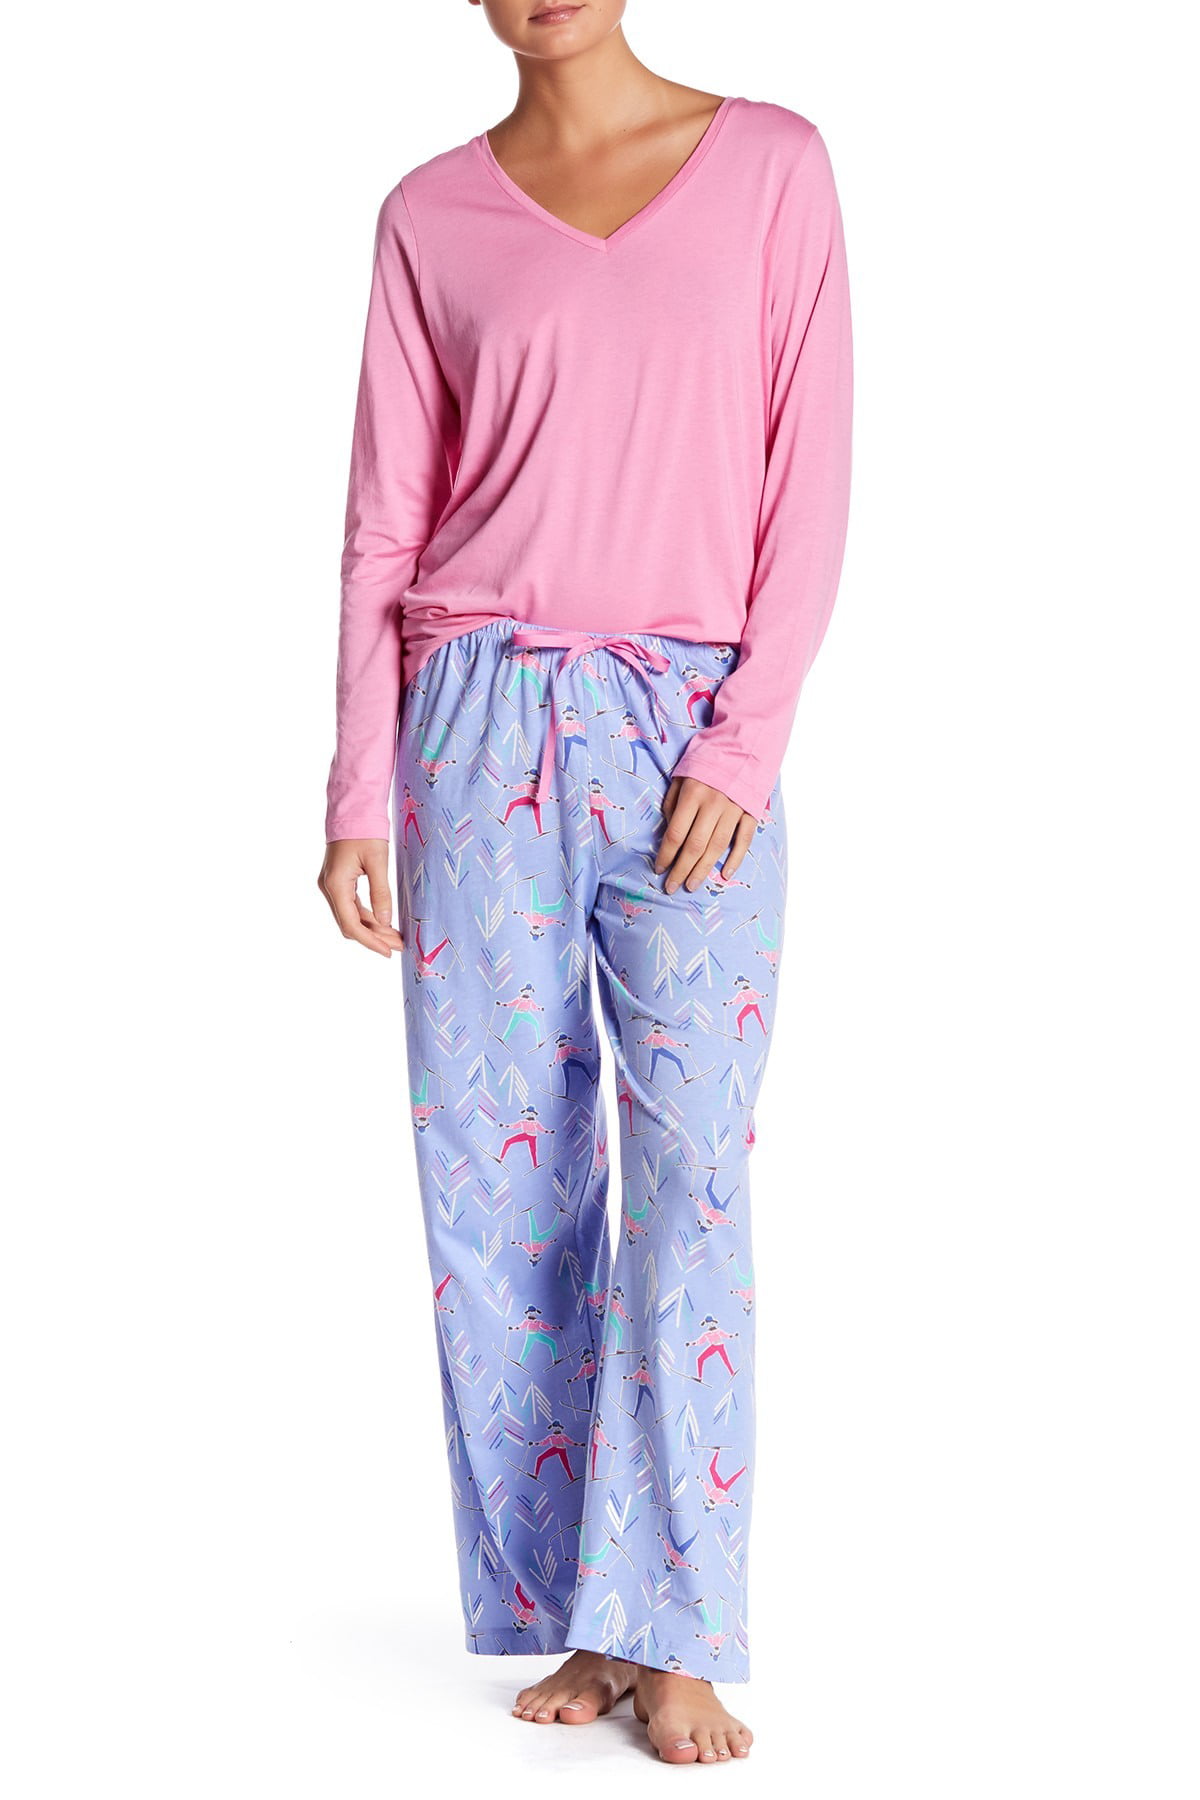 Womens pink pajamas